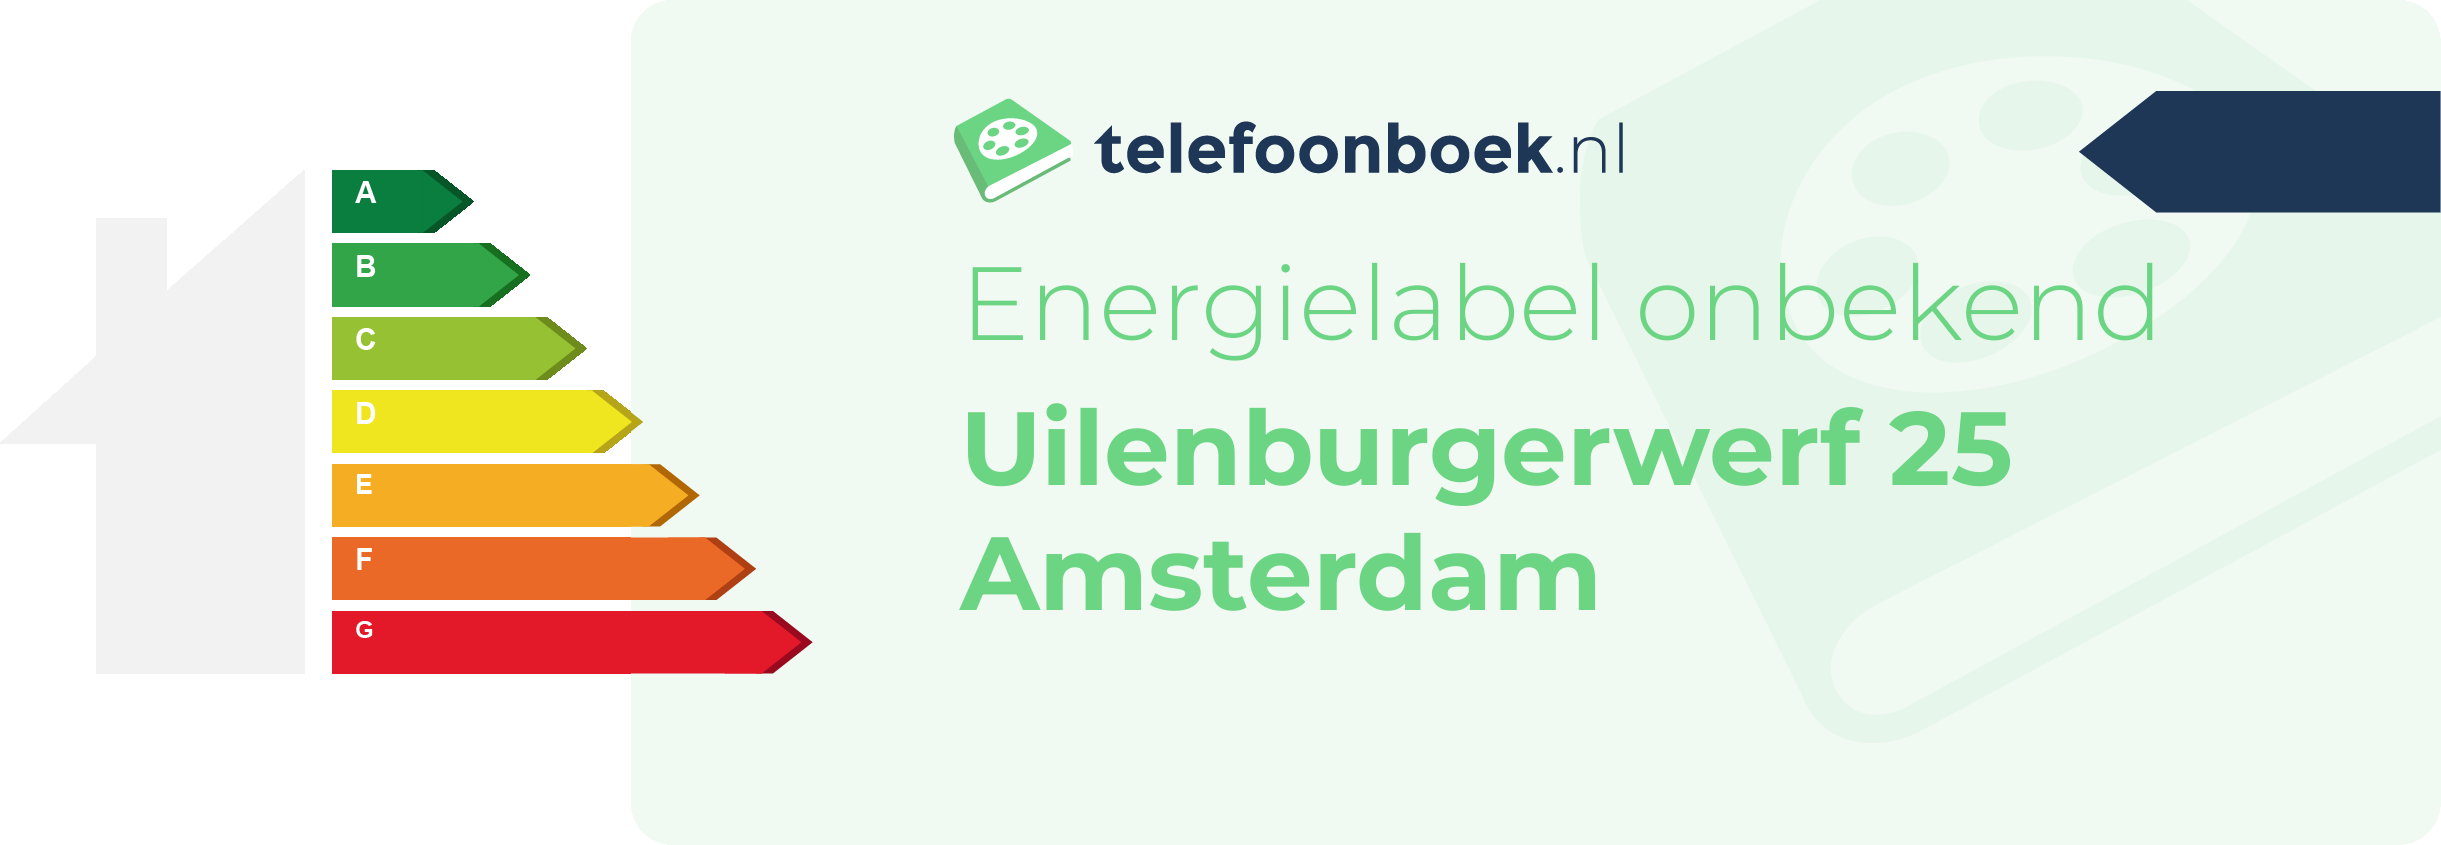 Energielabel Uilenburgerwerf 25 Amsterdam